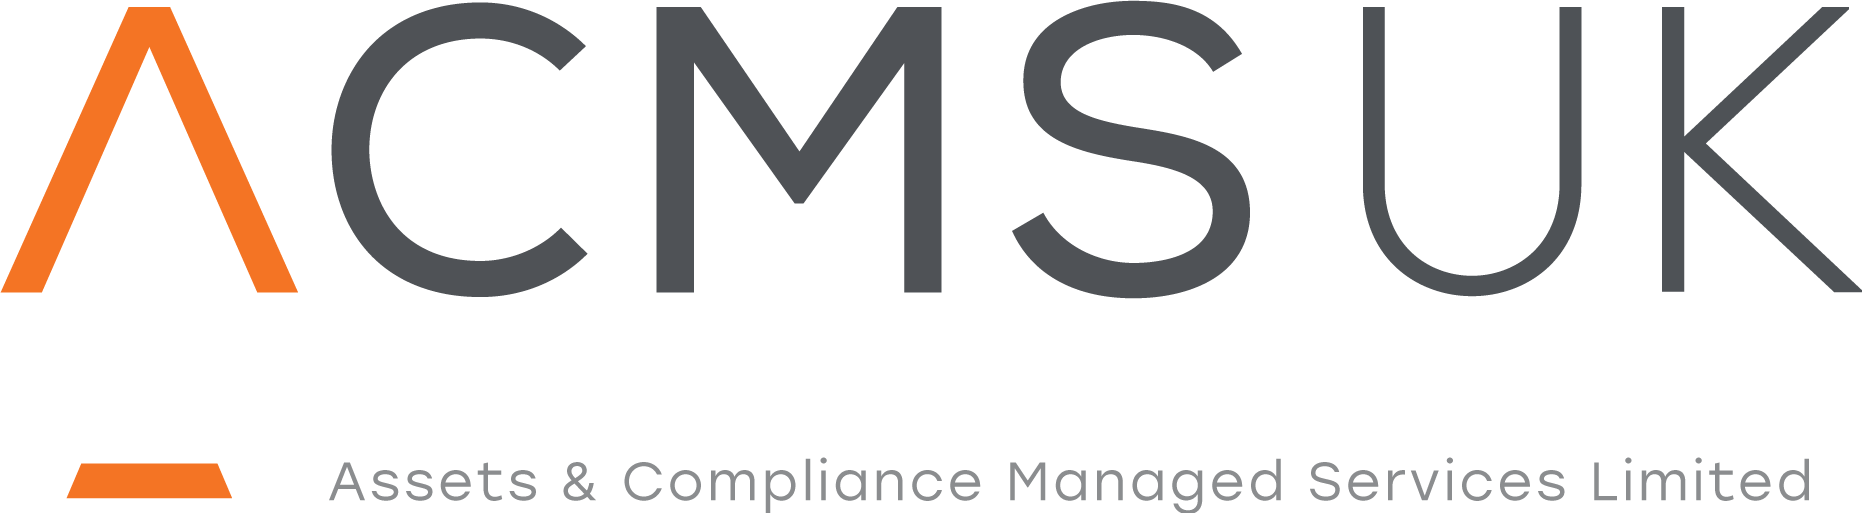 ACMS UK logo